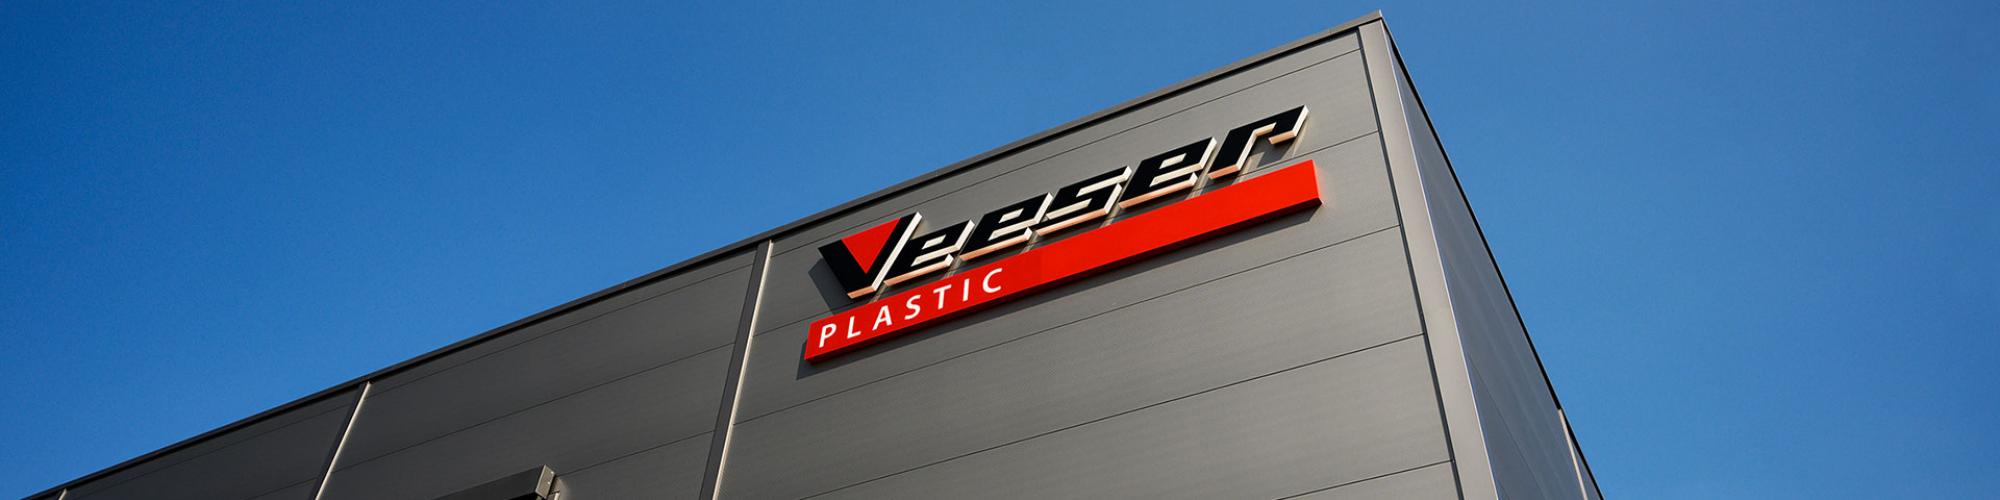 Veeser Plastic-Werk GmbH & Co. KG